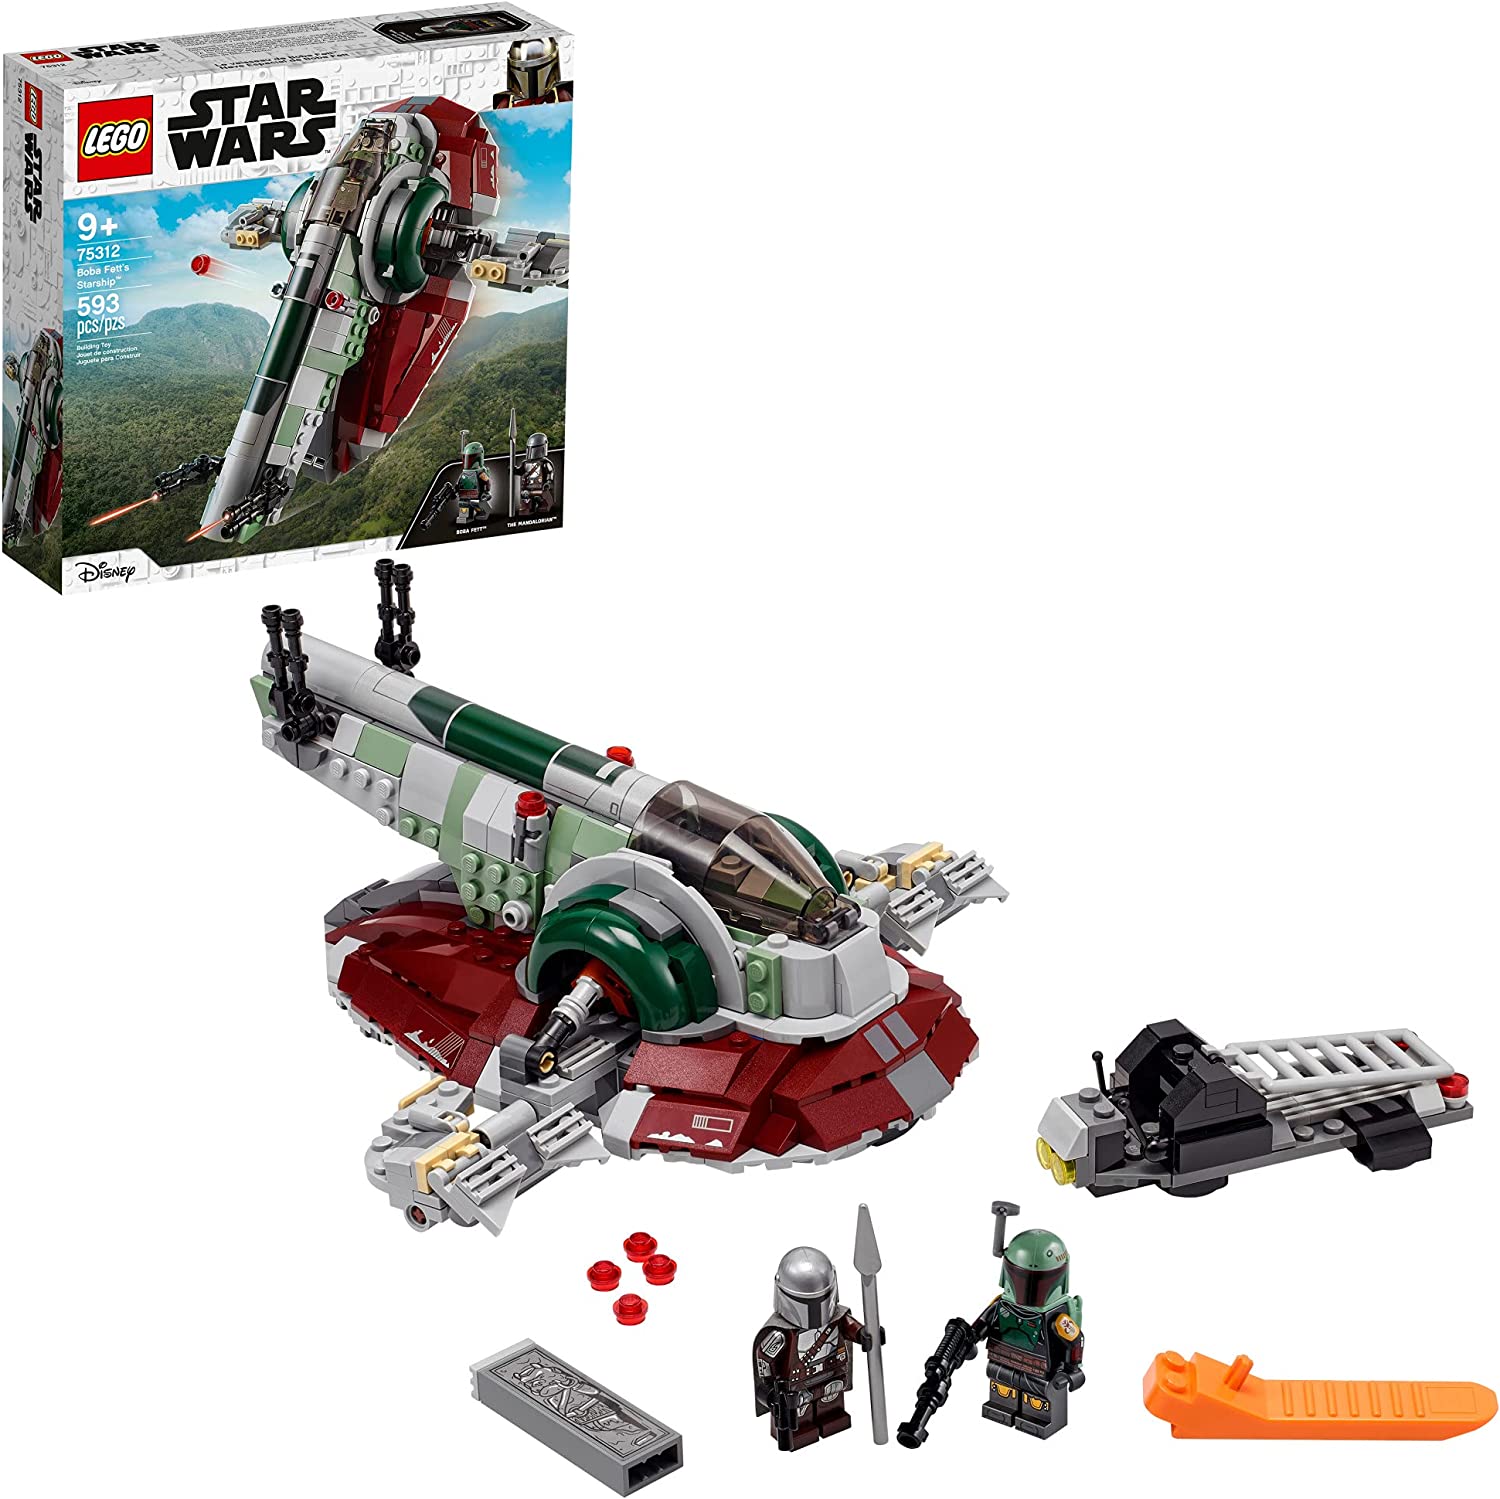 LEGO Star Wars Boba Fett's Starship Set 75312